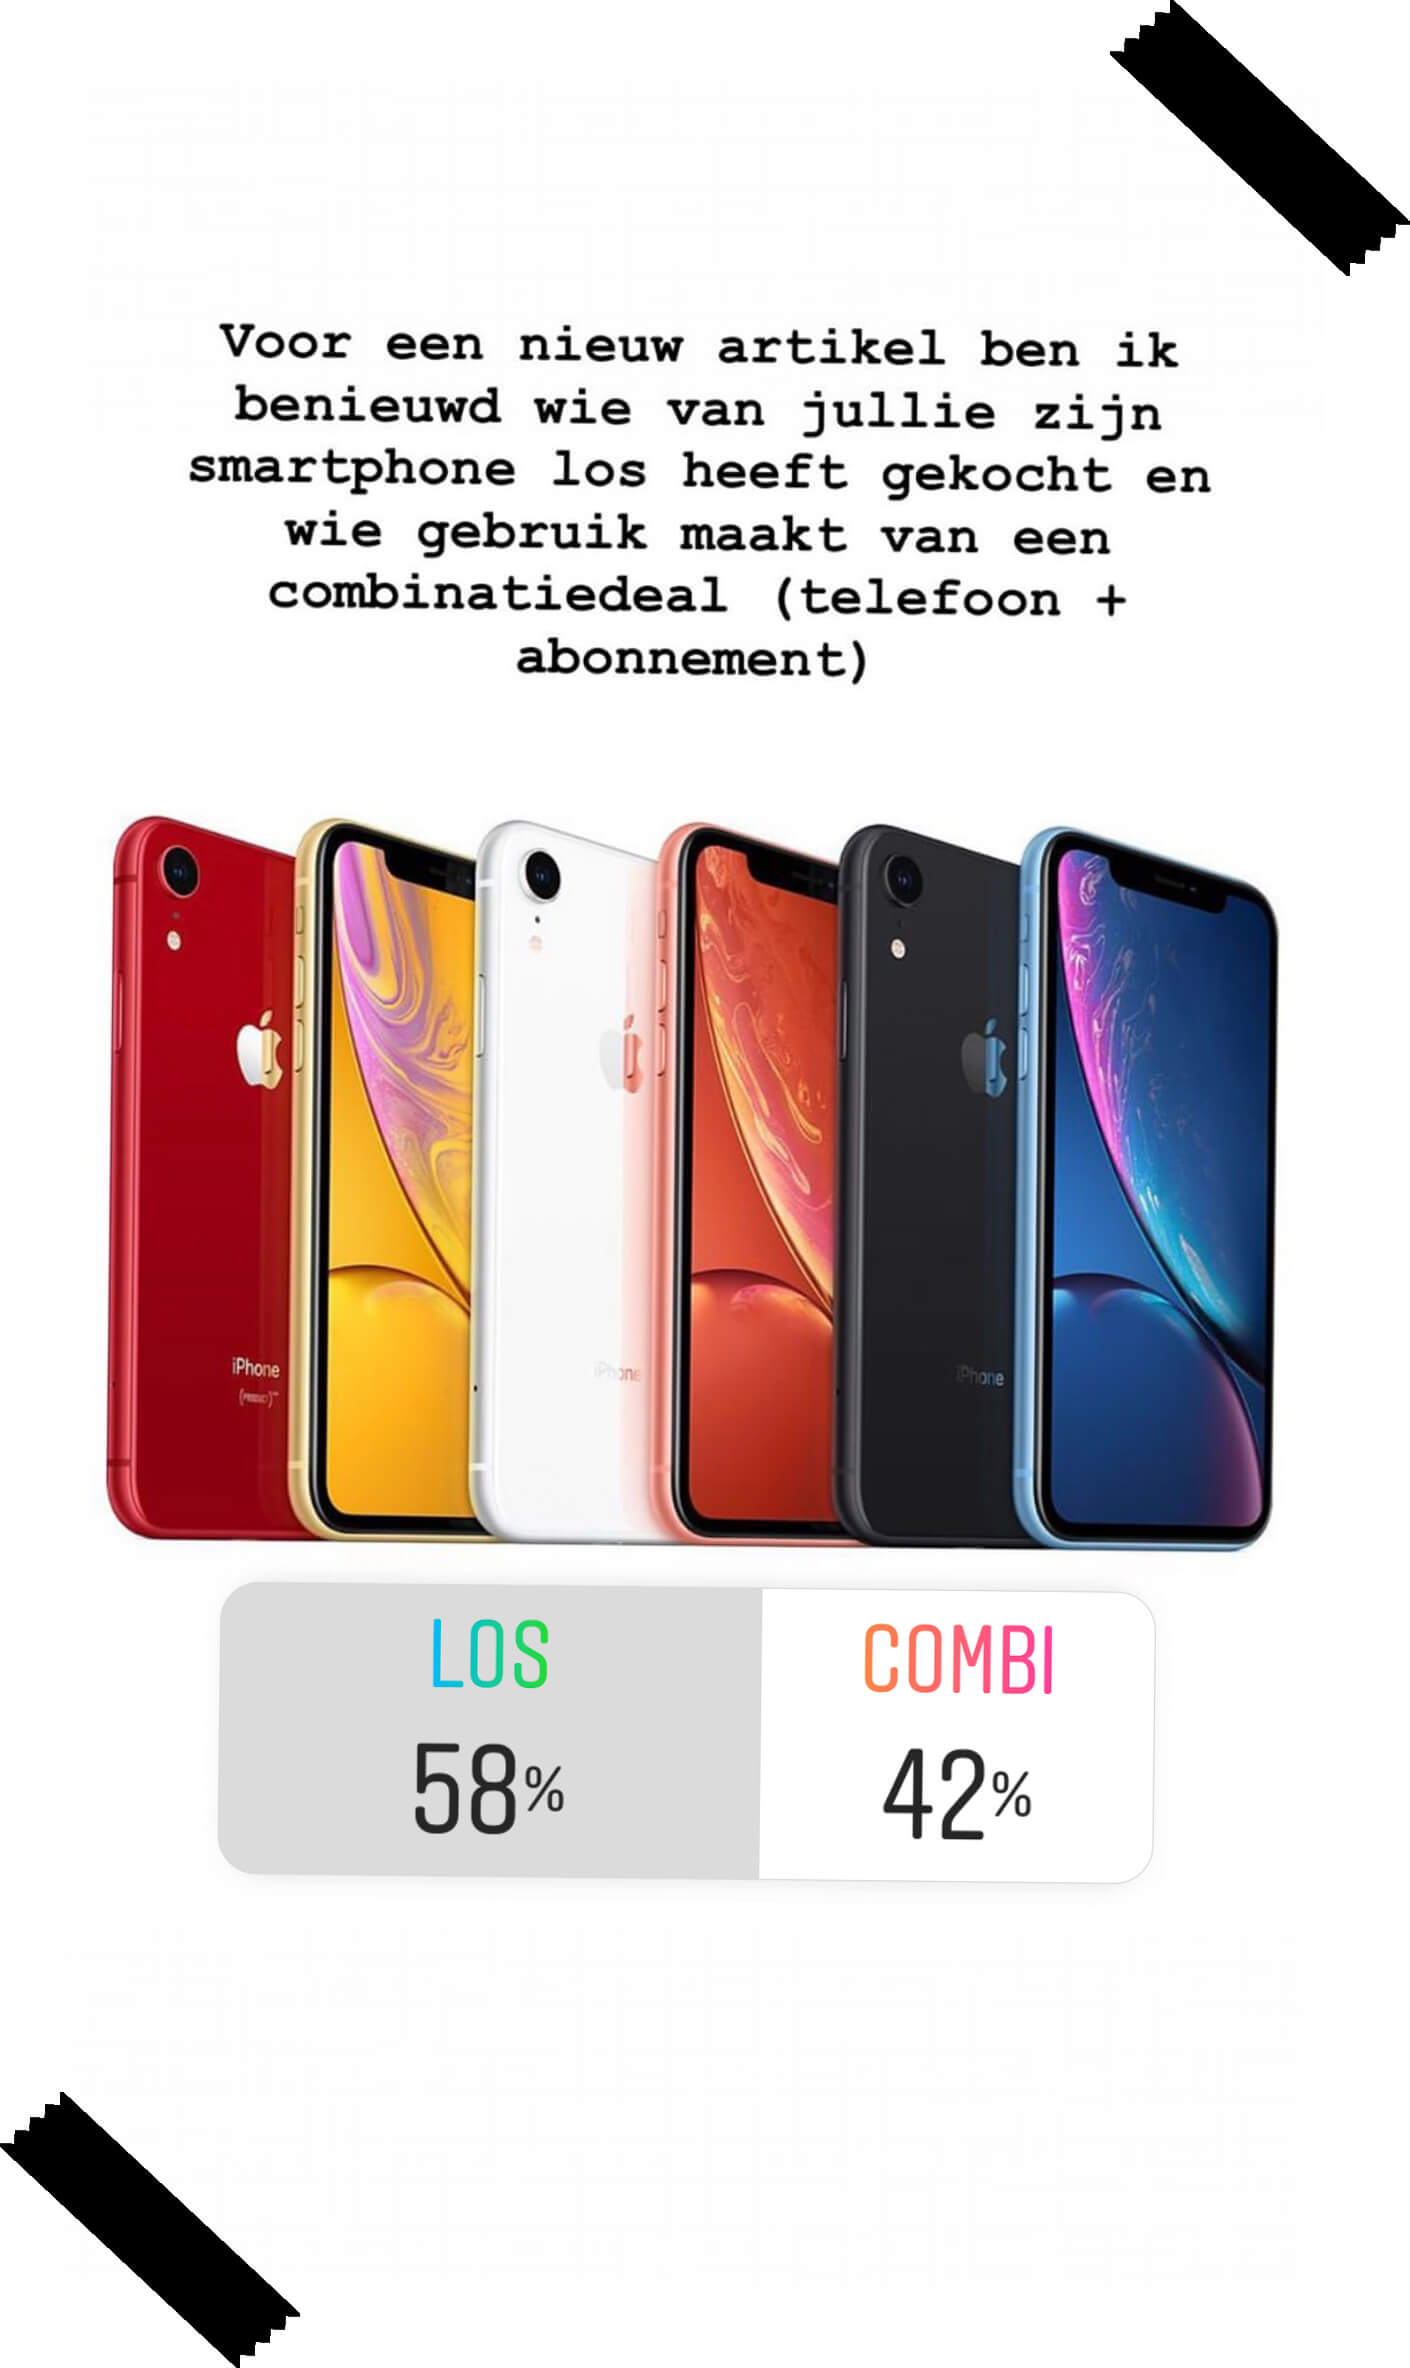 Bestudeer Nucleair Gezichtsveld Mijn nieuwe Iphone los kopen of in een combinatiedeal? - Moneymom.nl